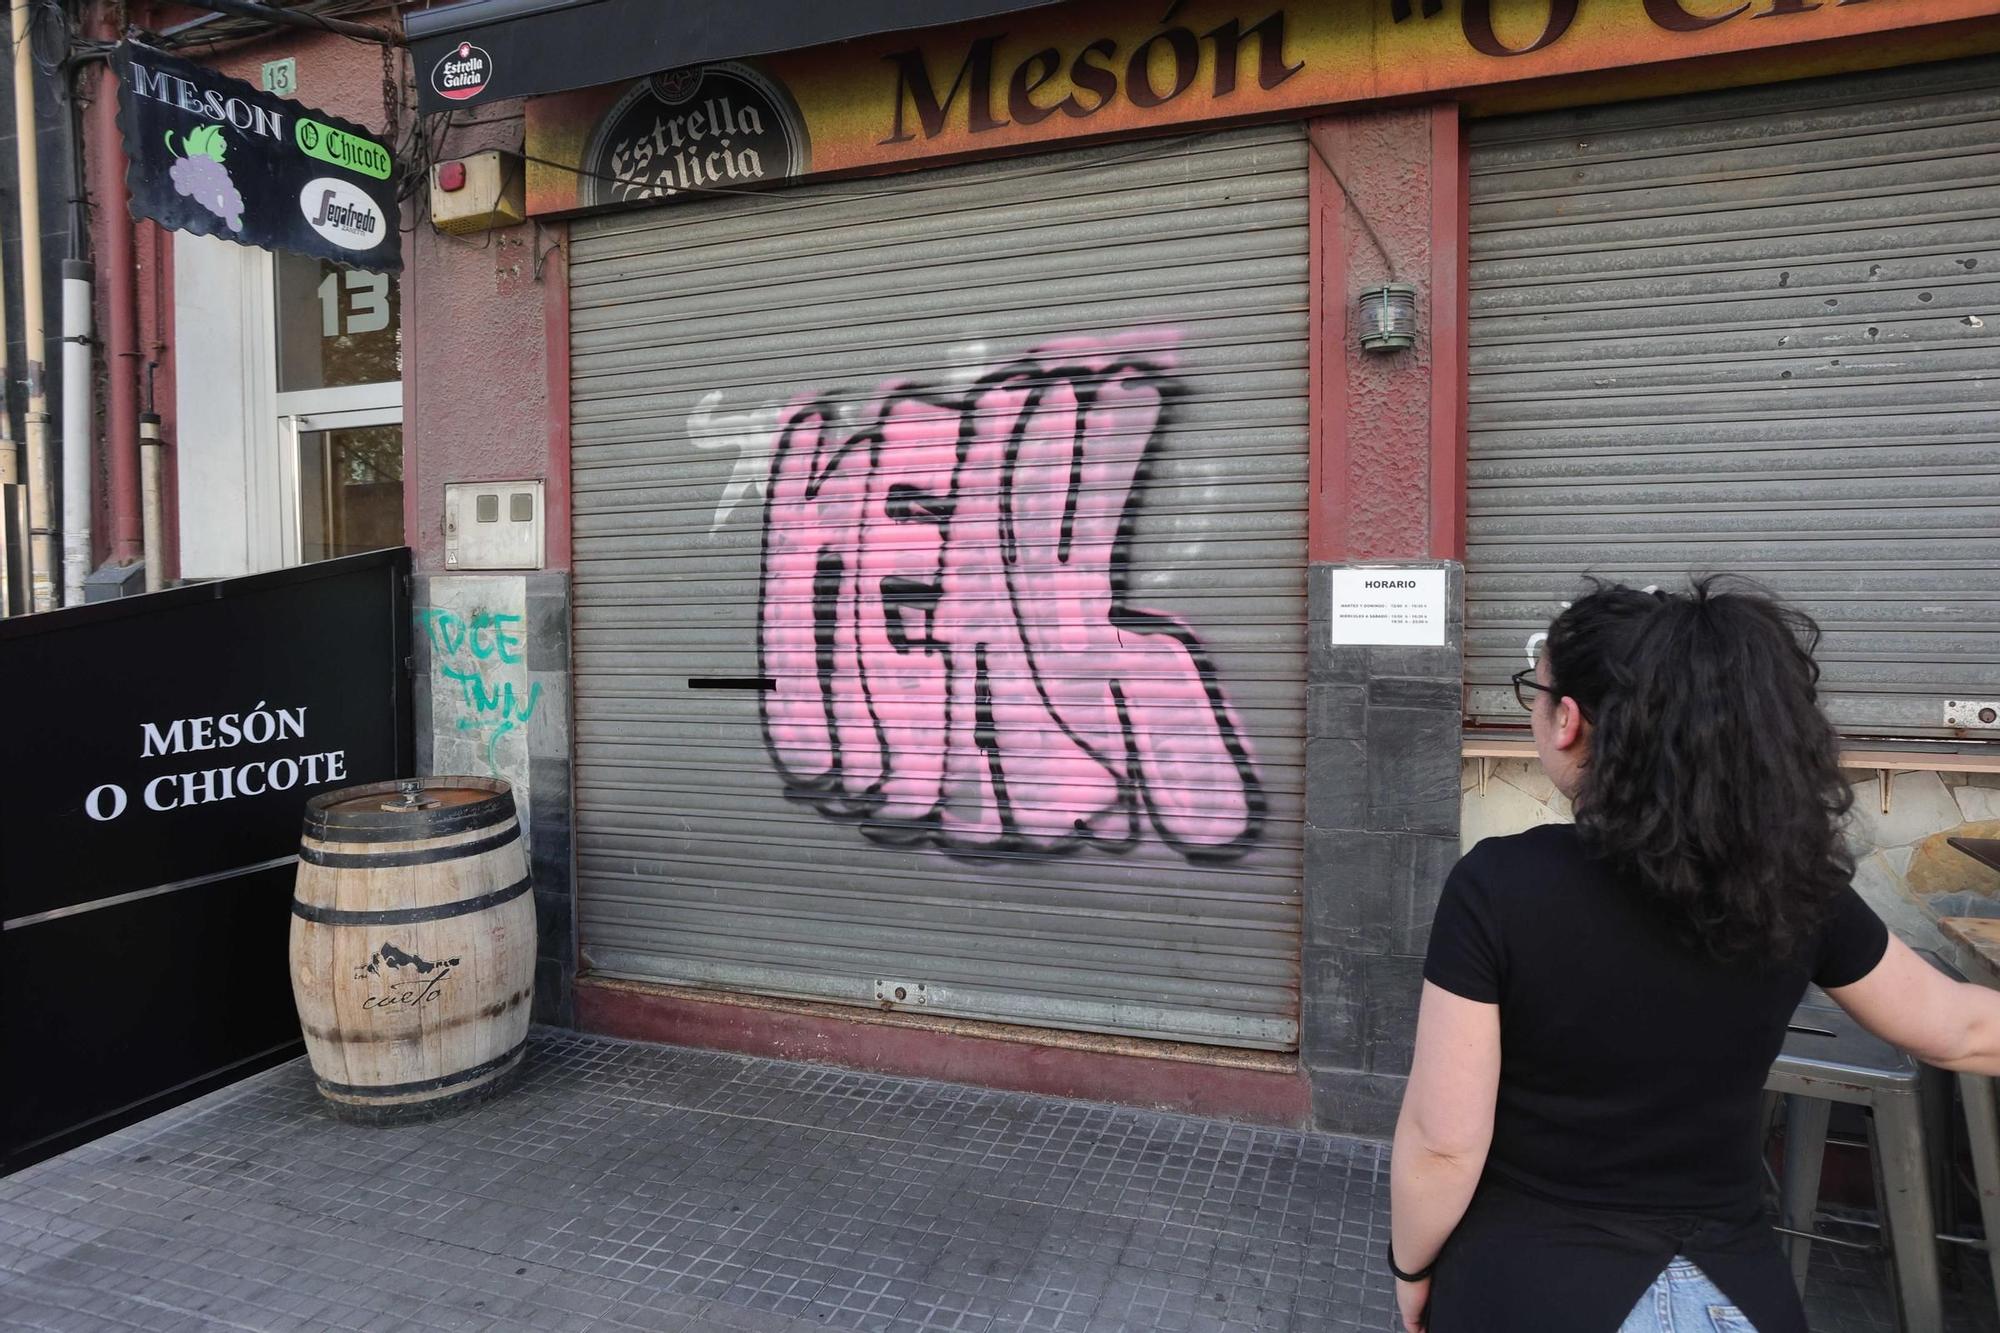 Oleada de grafitis la misma noche en seis bajos de Nicomedes Pastor Díaz